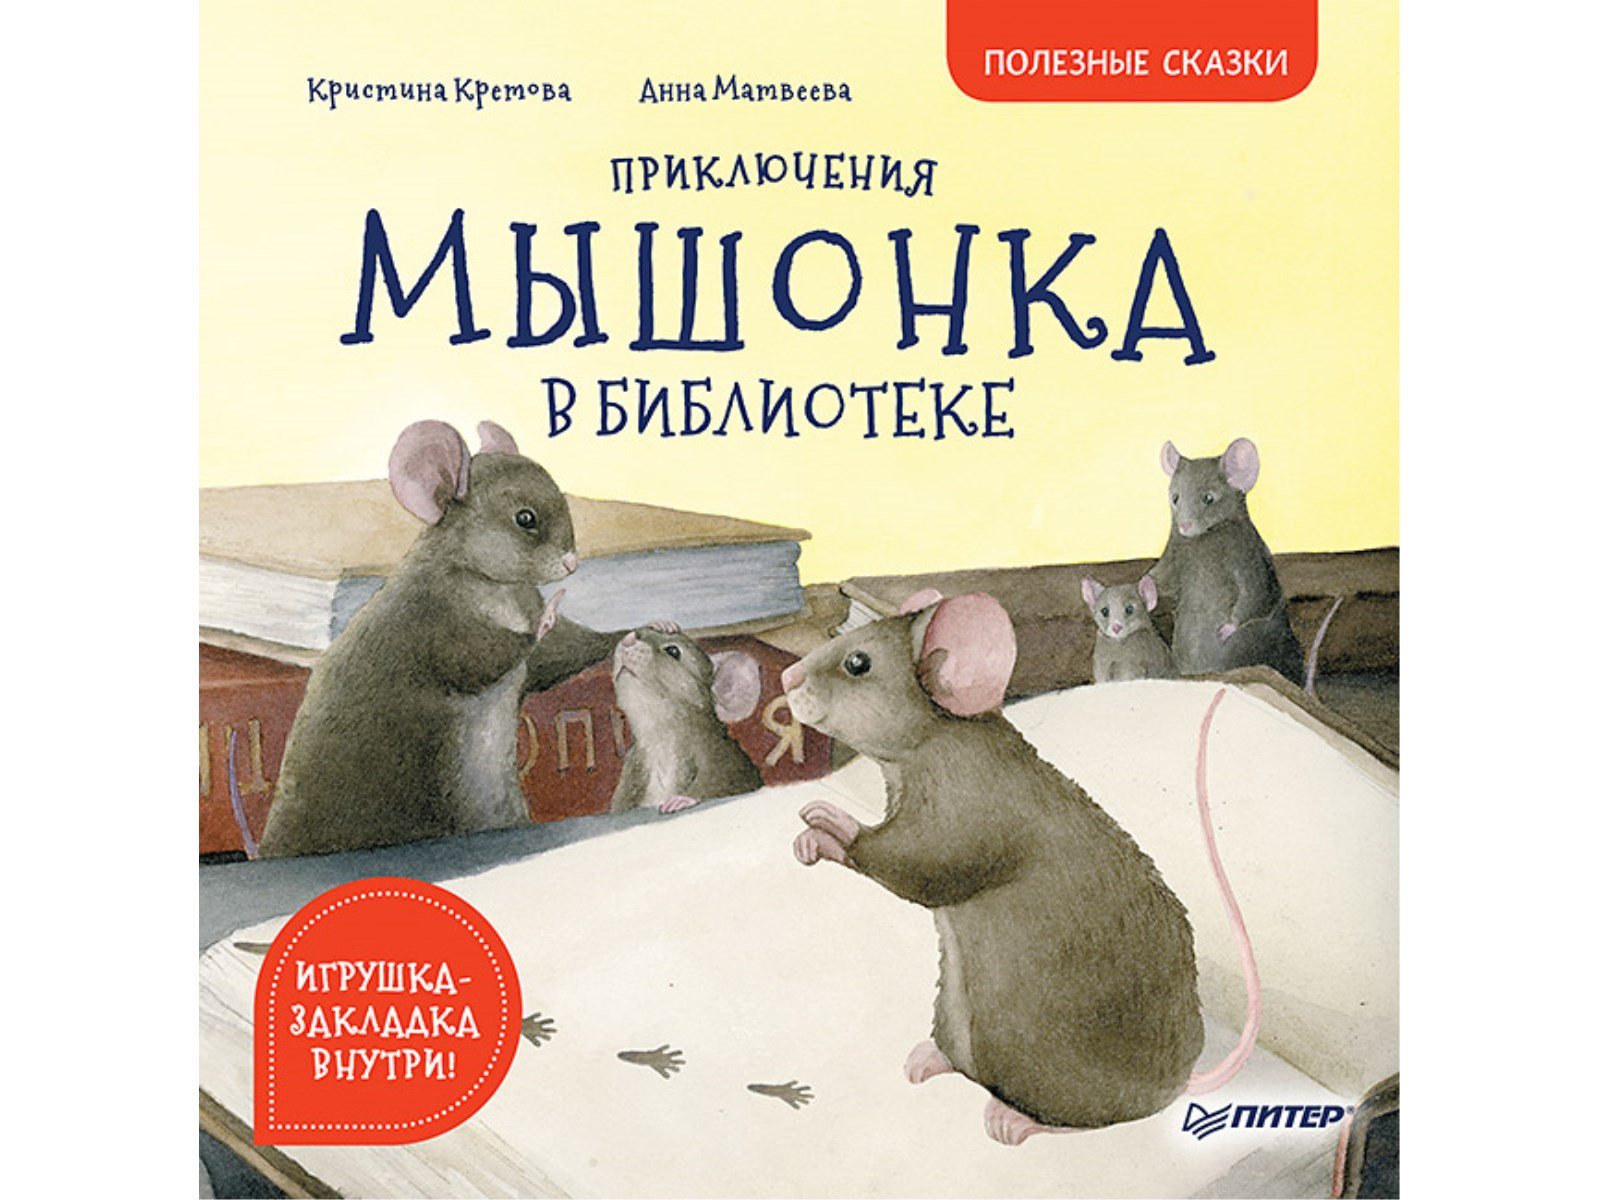 Приключения мышонка в библиотеке. Полезные сказки. Кретова Кристина Александровна, Матвеева  А. П.